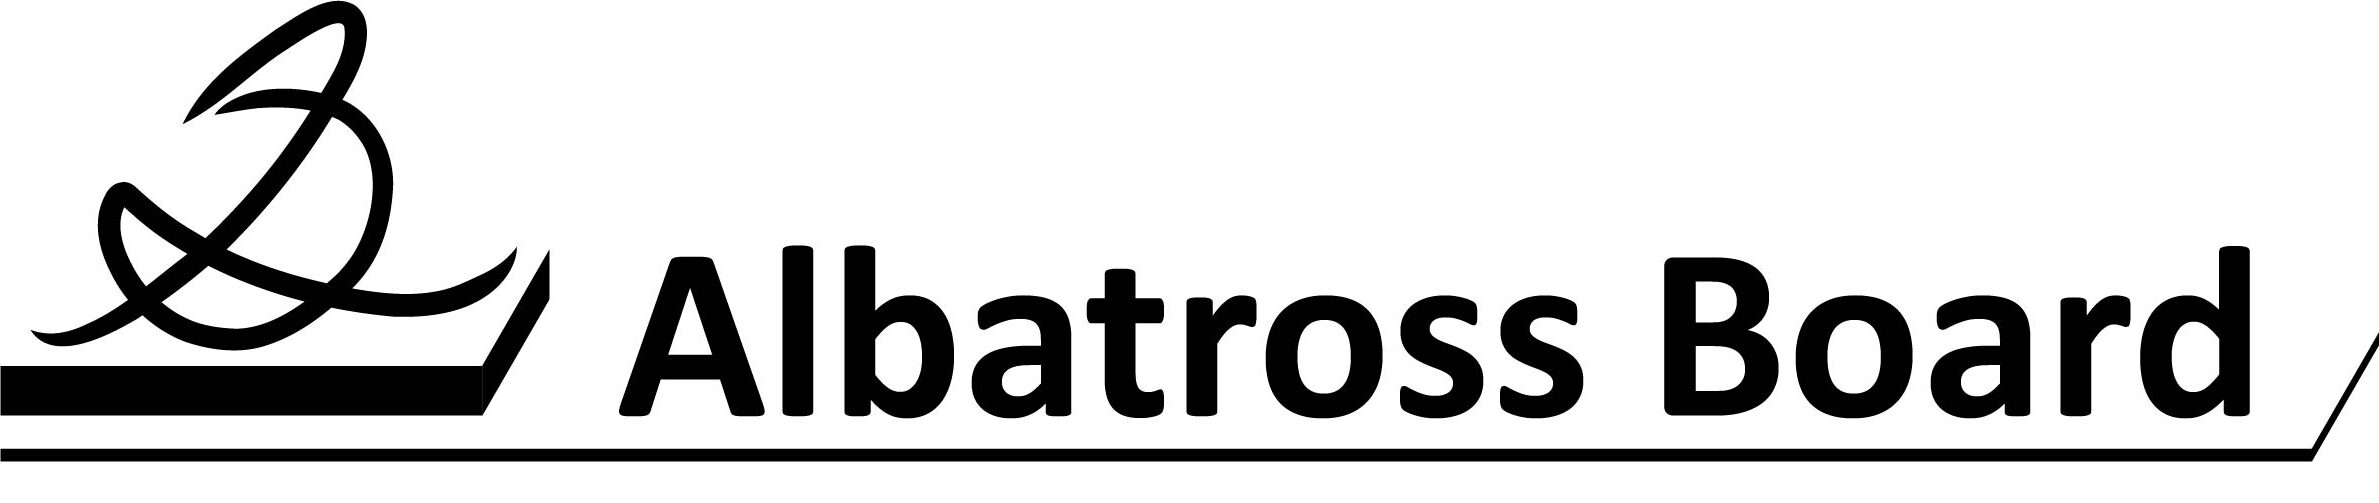 Albatross Board